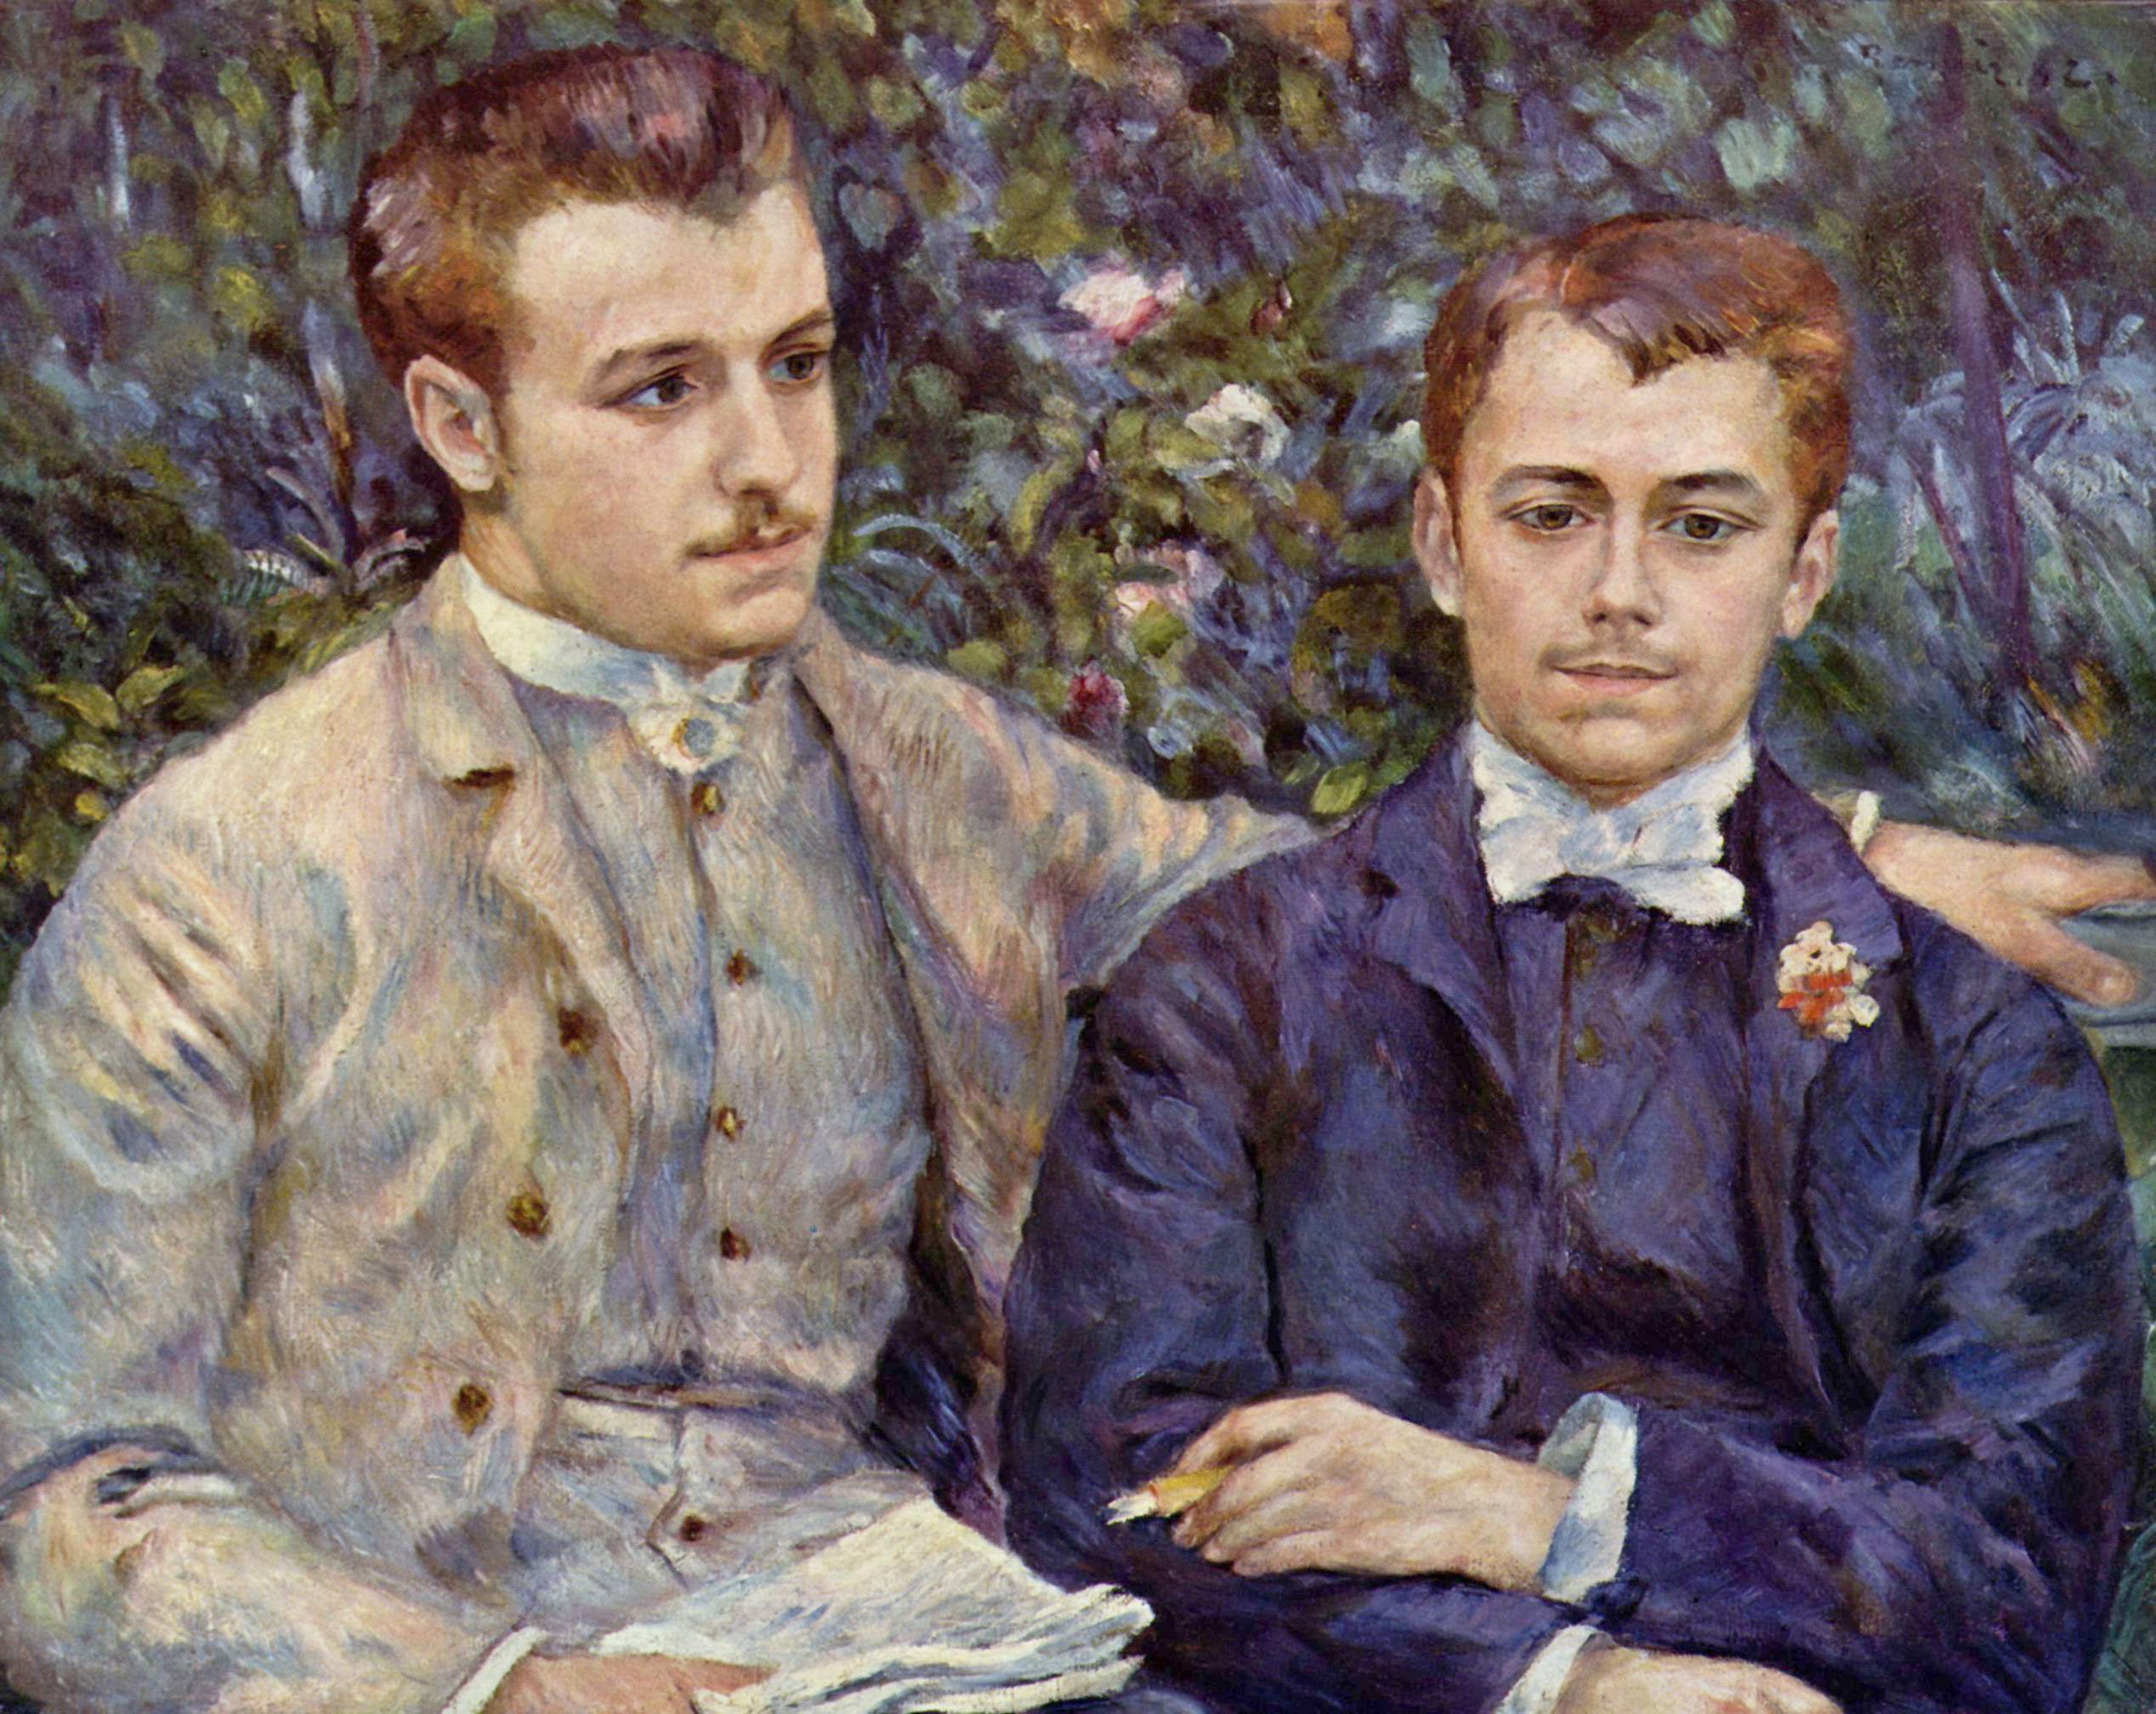 查尔斯·杜兰-鲁埃和乔治·杜兰-鲁埃肖像 by 皮埃尔-奥古斯特· 雷诺阿 - 1882 - 65 x 81 cm 